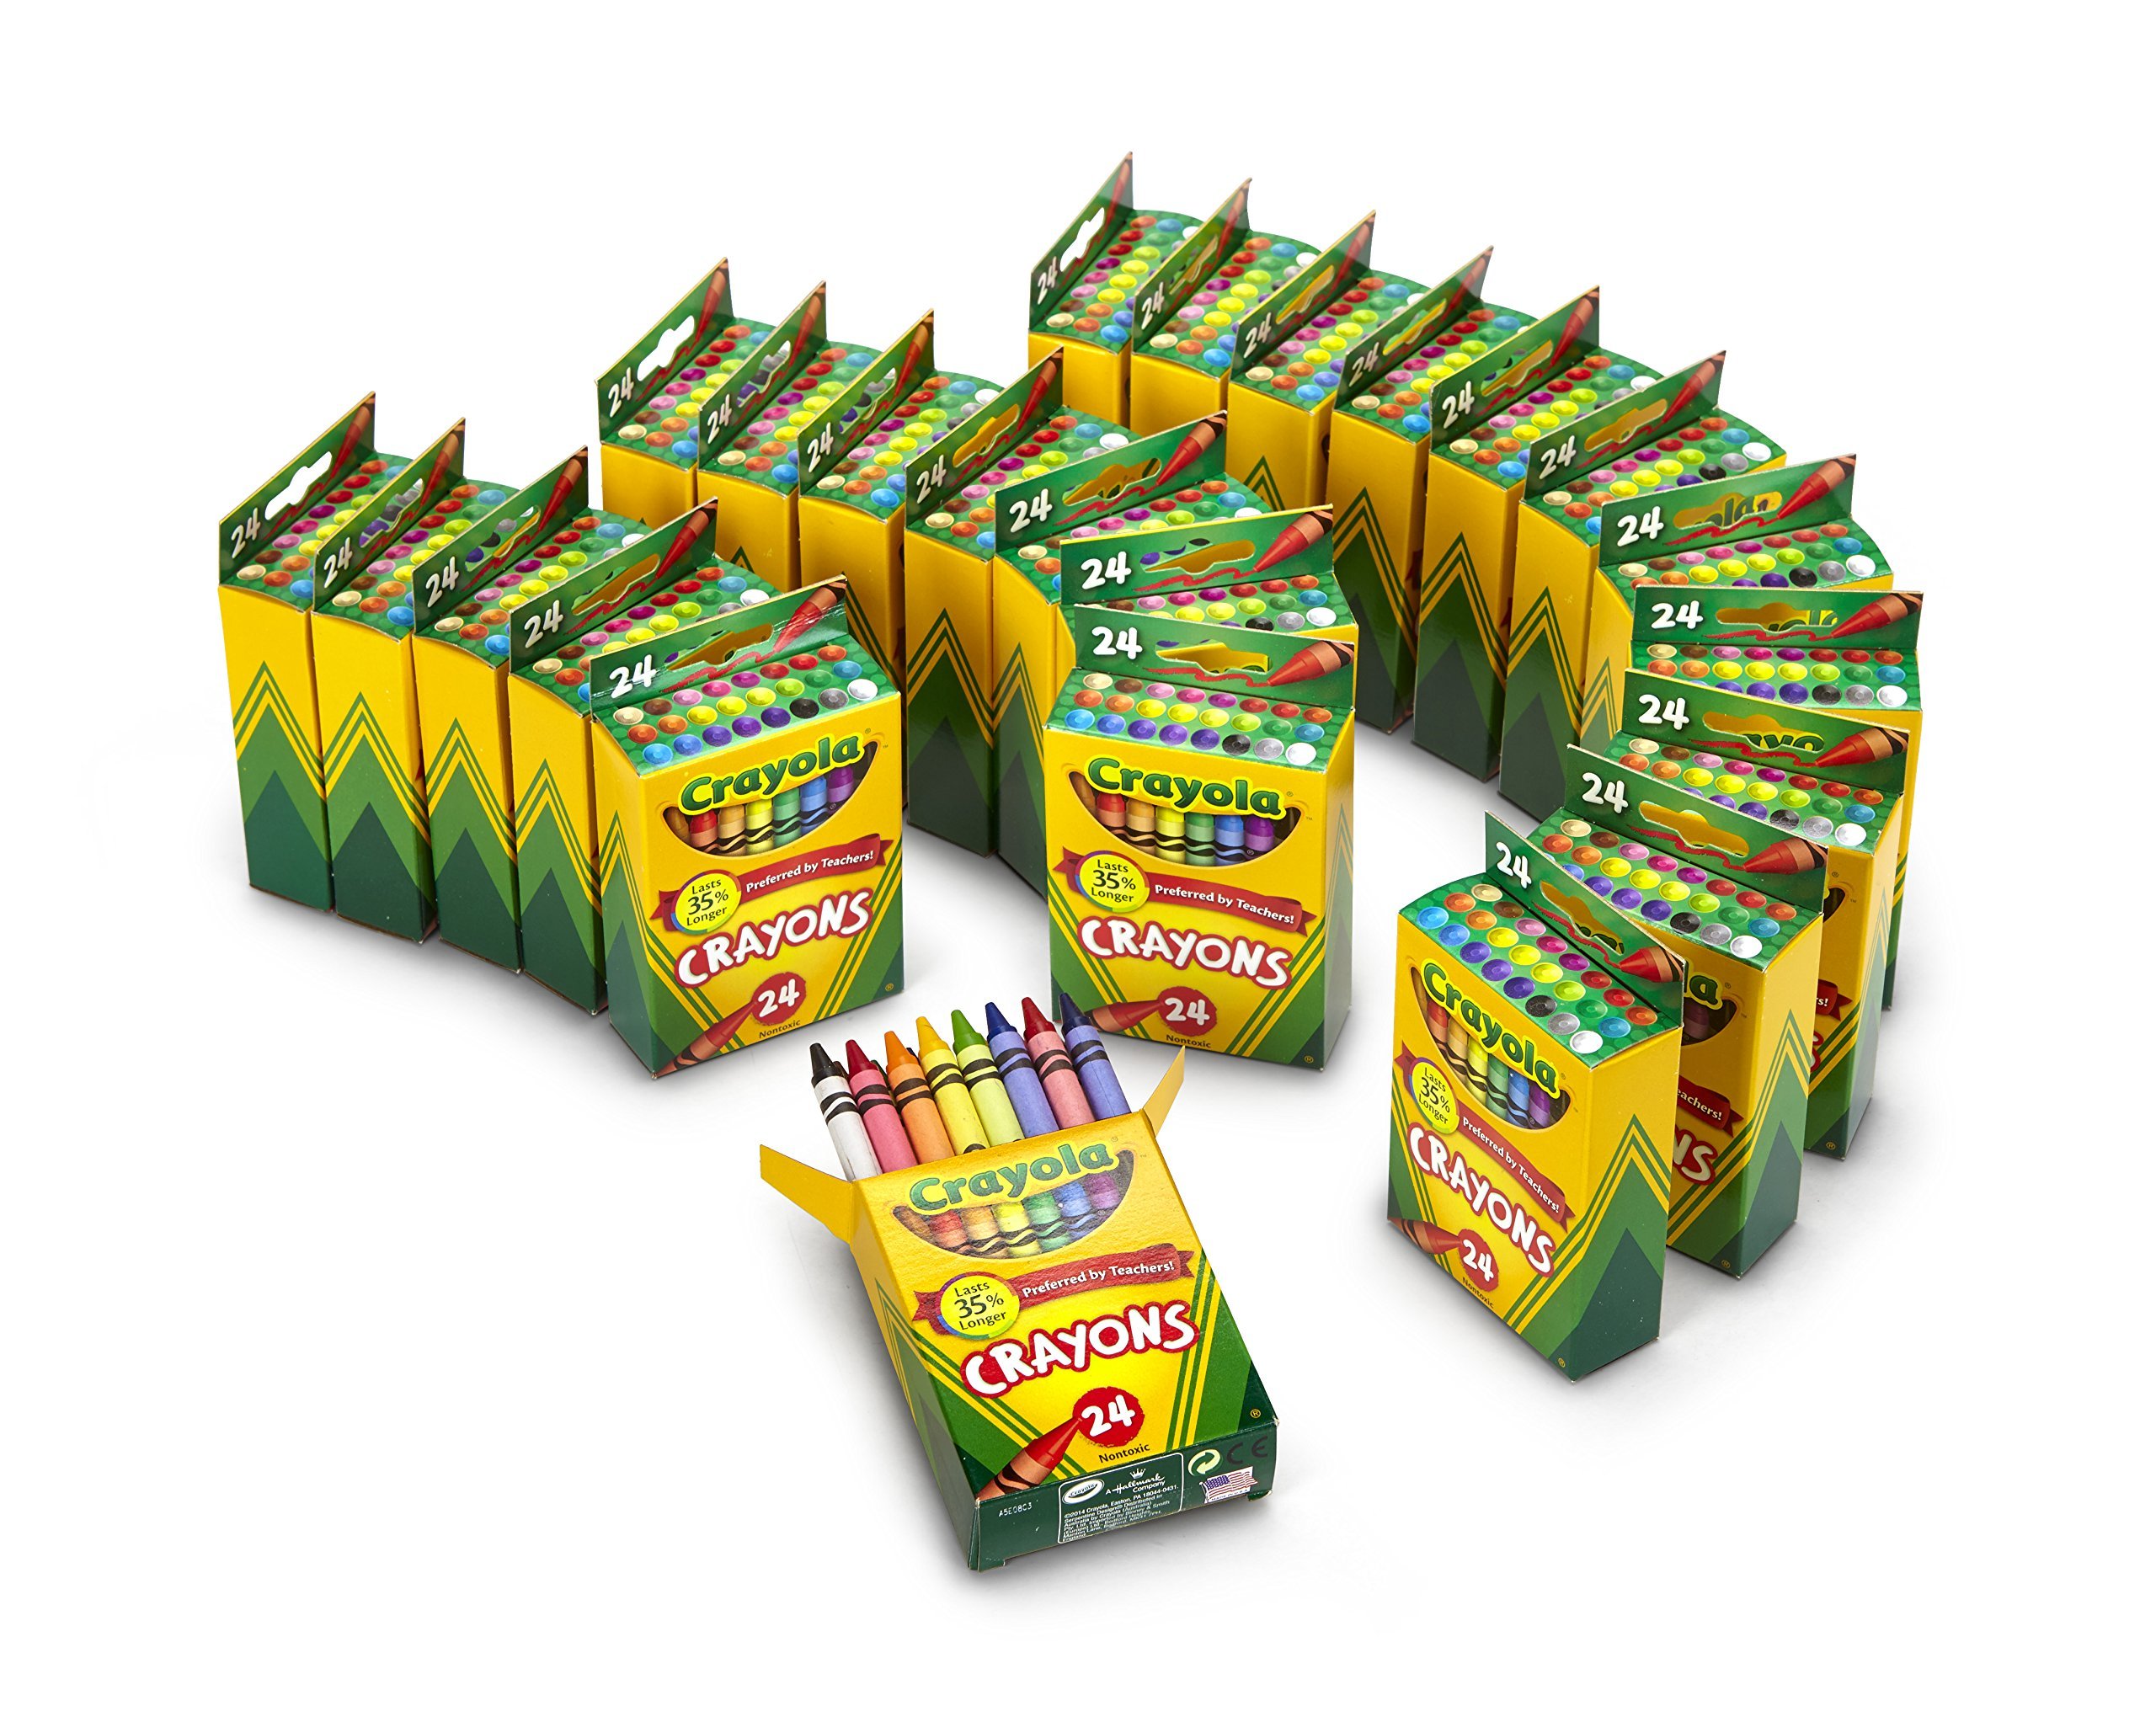 Crayola Crayons 24 Boxes, 24 Crayons per Box - image 2 of 7